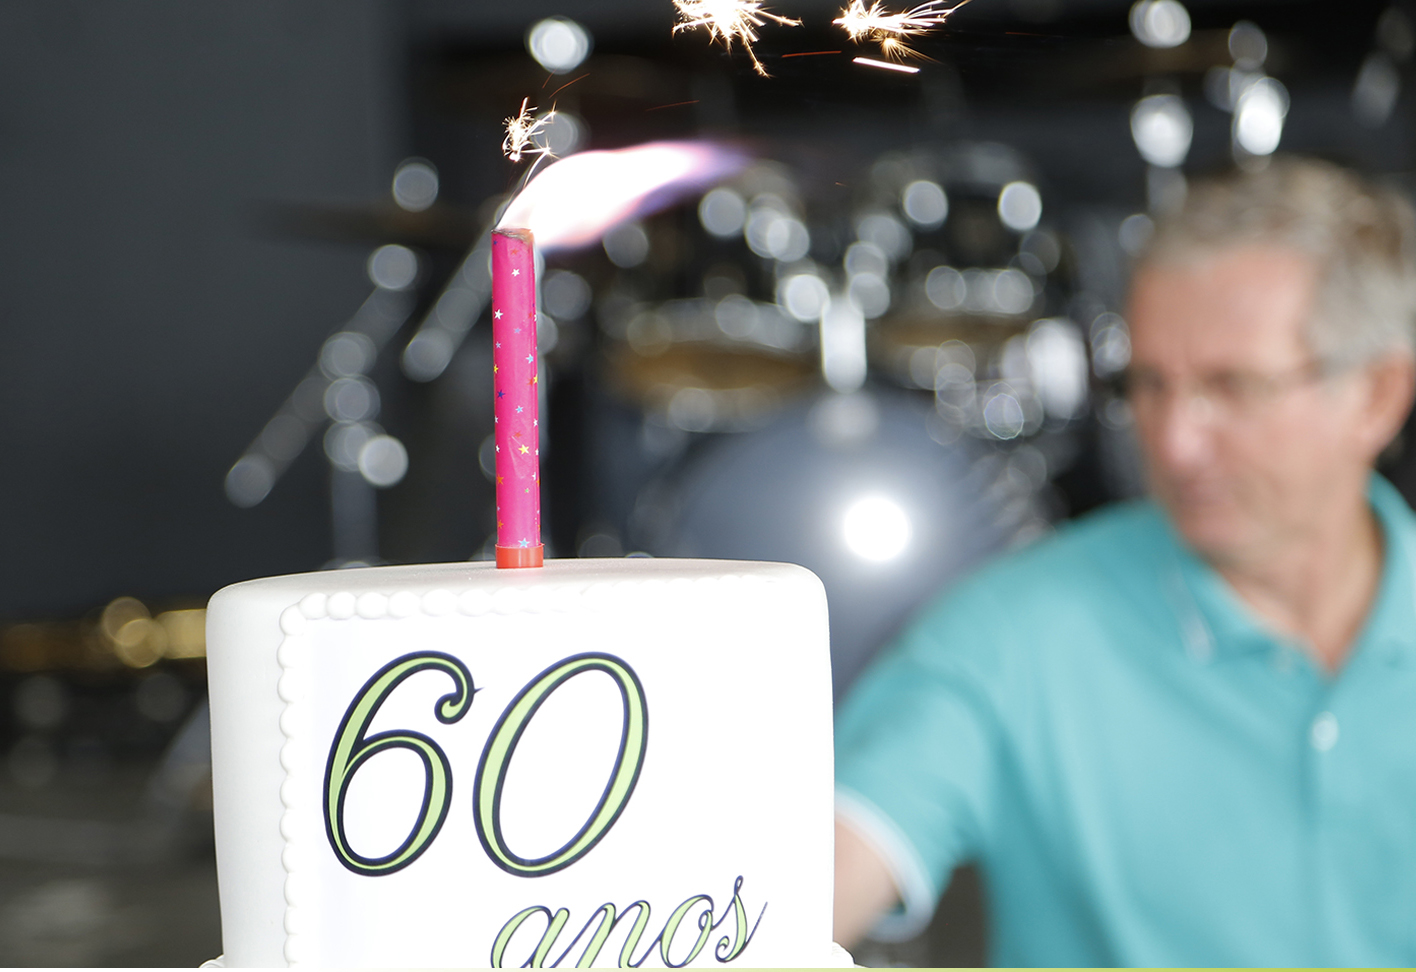 Servidores comemoram 60 anos do Incaper em festa da Assin